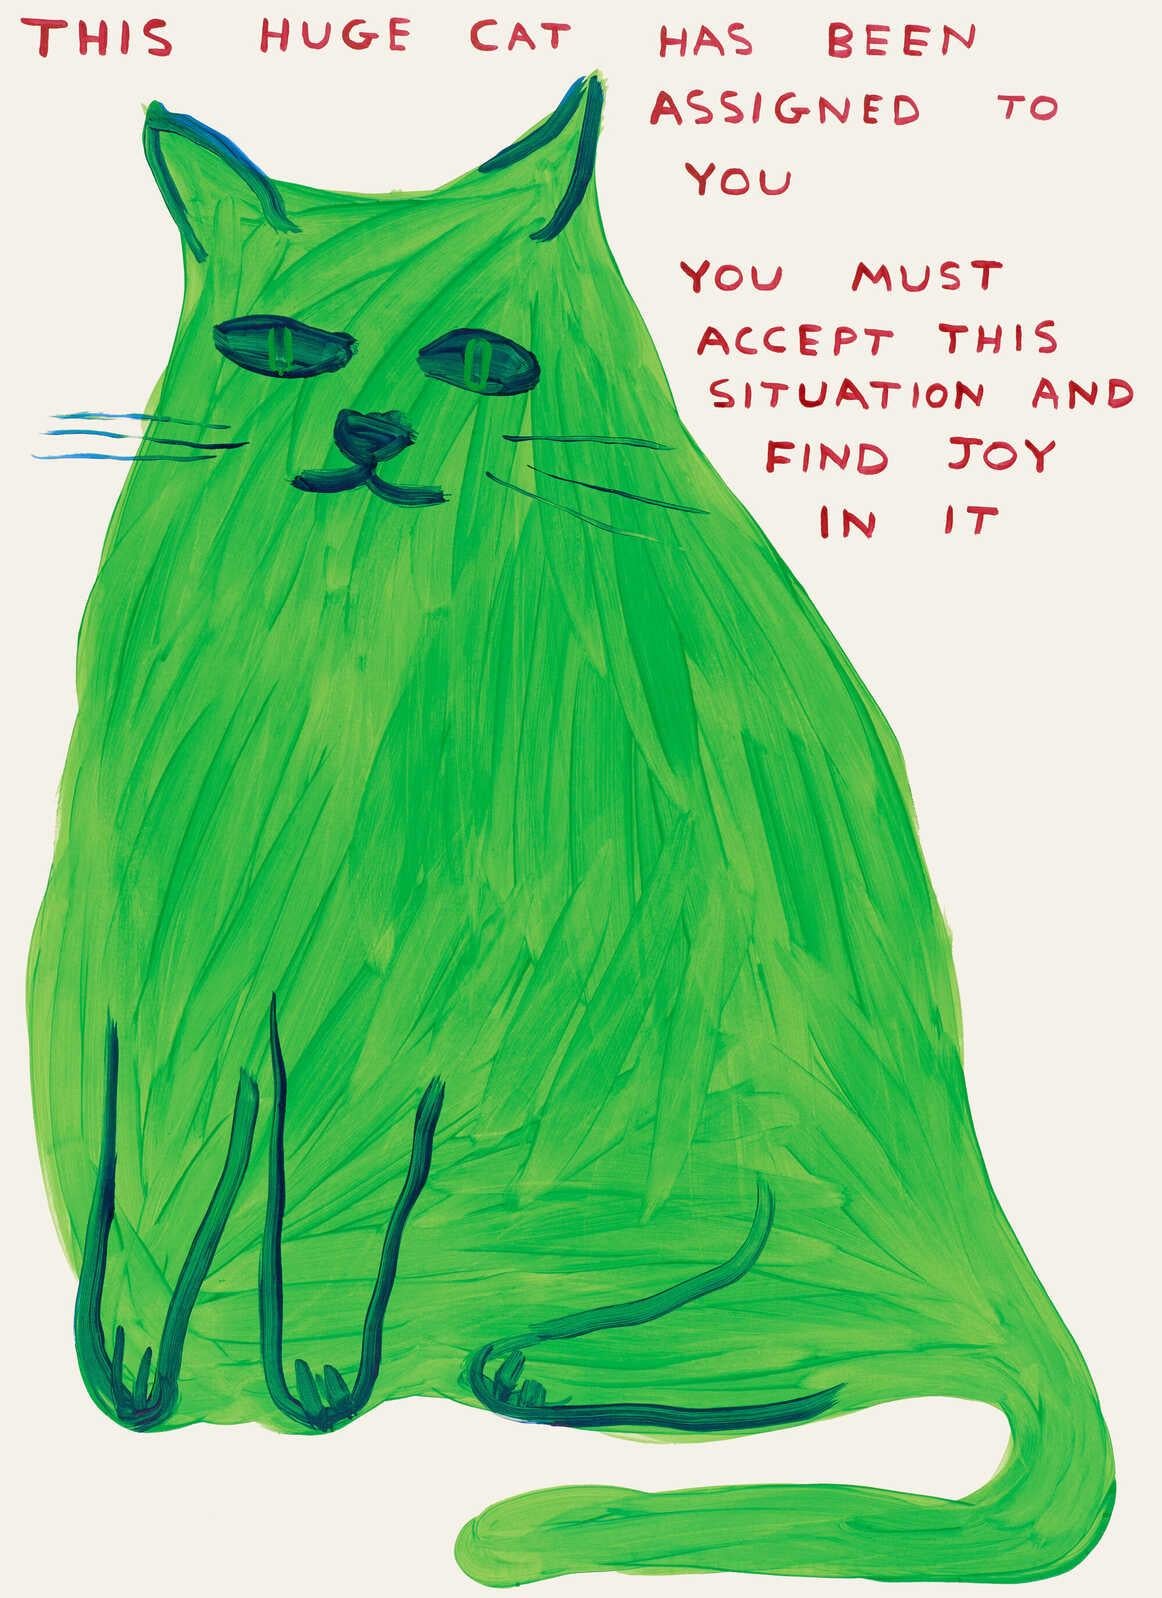 Ce grand chat, par David Shrigley, 2023

Lithographie offset sur papier Munken Lynx 200 g/m².
31 1/2 × 23 3/5 in (80 × 60 cm)

David Shrigley est né en 1968 à Macclesfield, au Royaume-Uni. Il vit et travaille à Brighton et dans le Devon, au